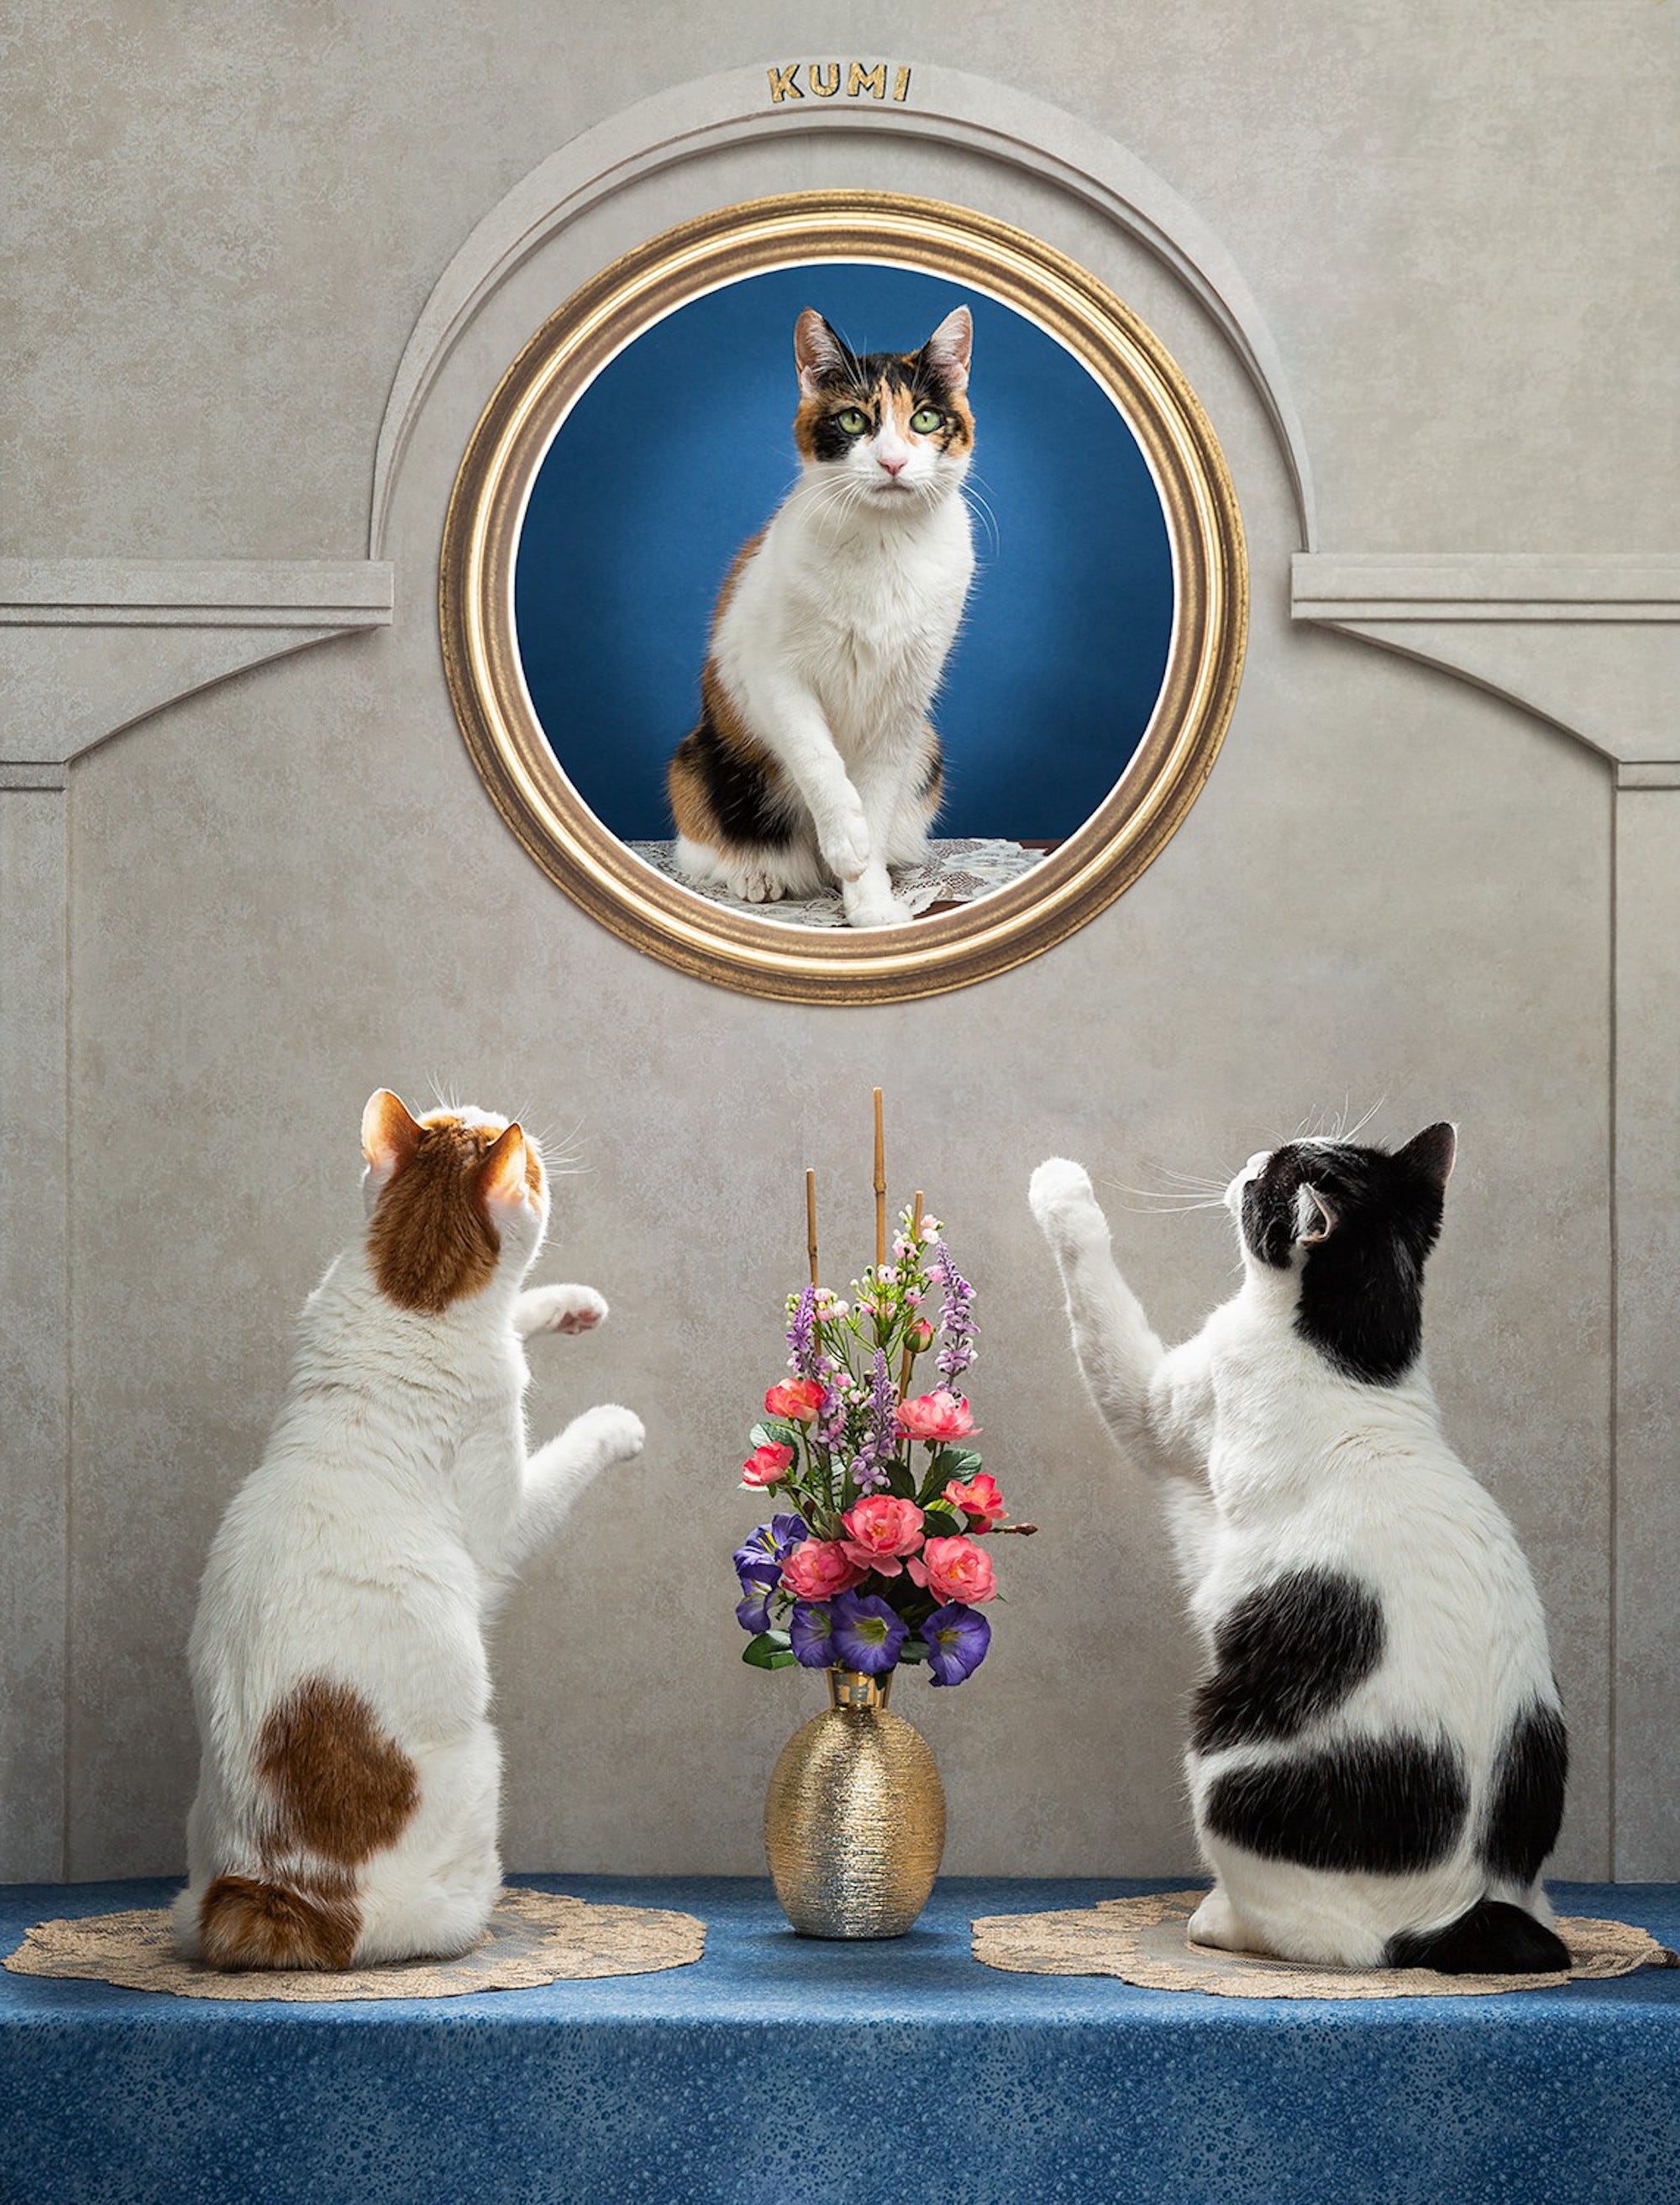 Zwei Katzen schauen auf das Porträt einer Katze und greifen danach.